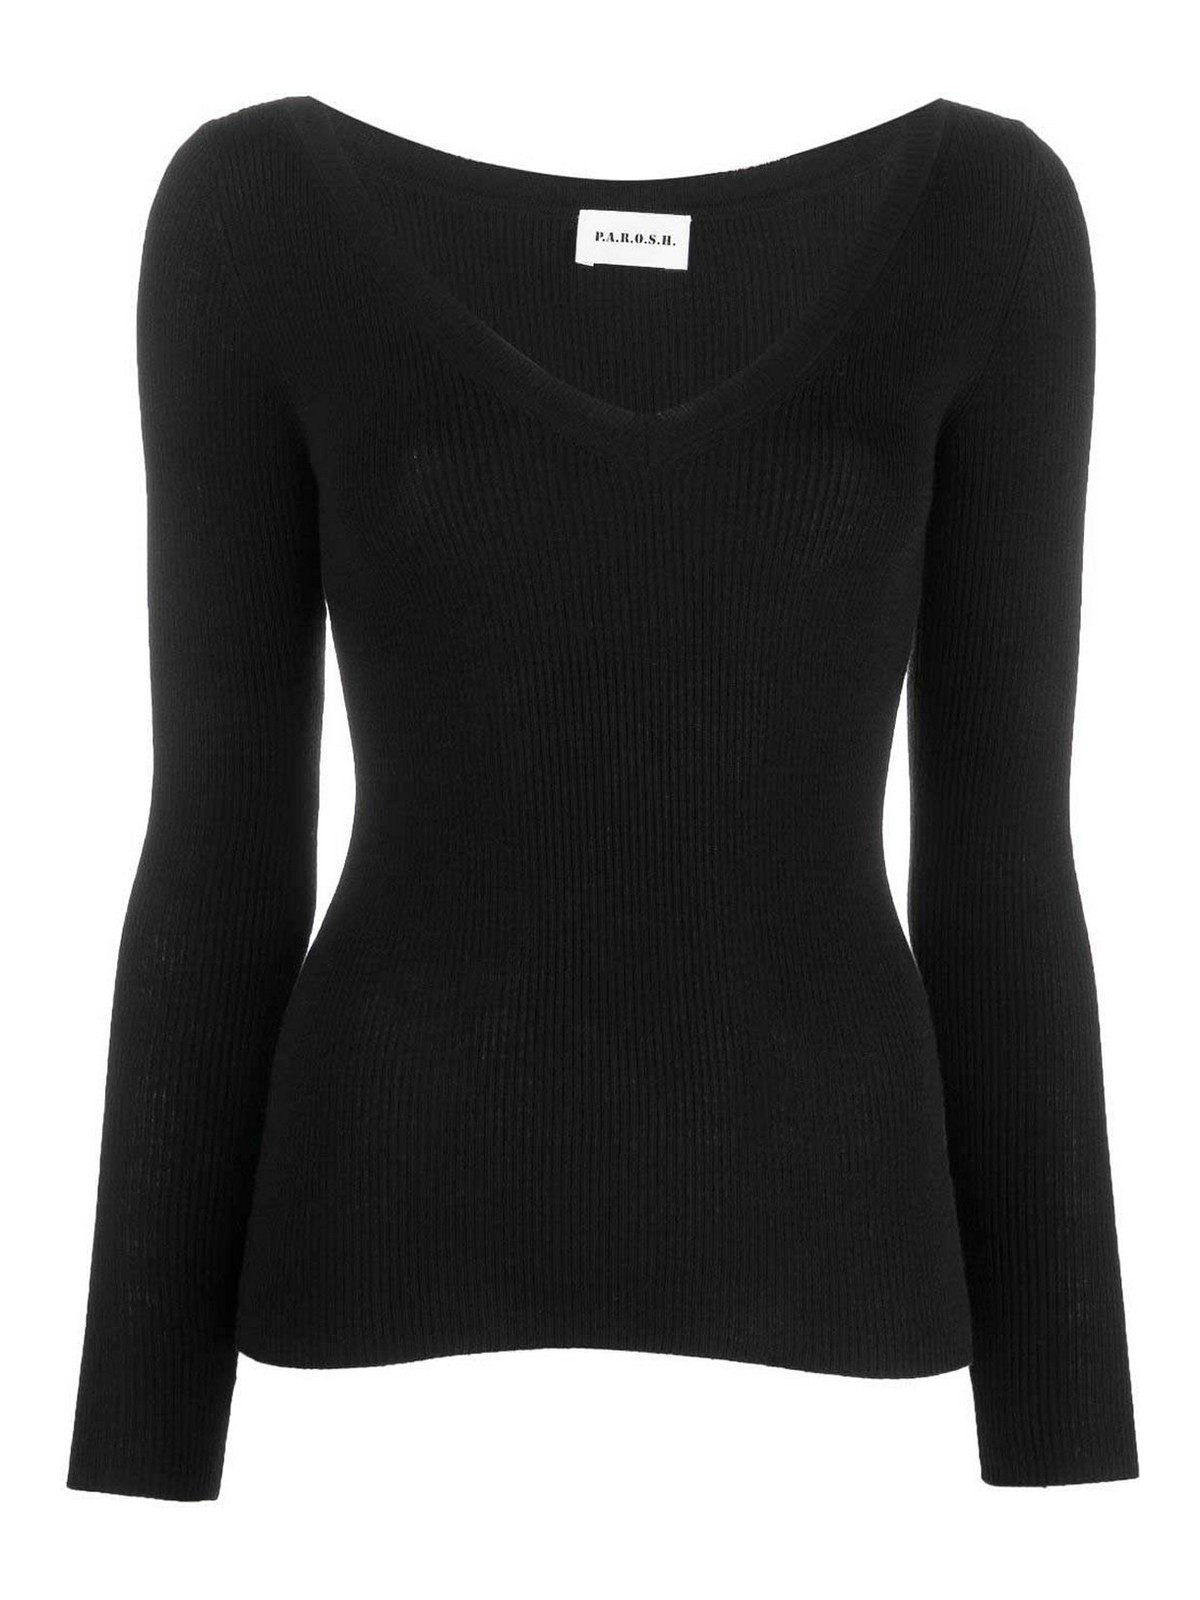 Shop P.a.r.o.s.h Wool Sweatshirt In Black